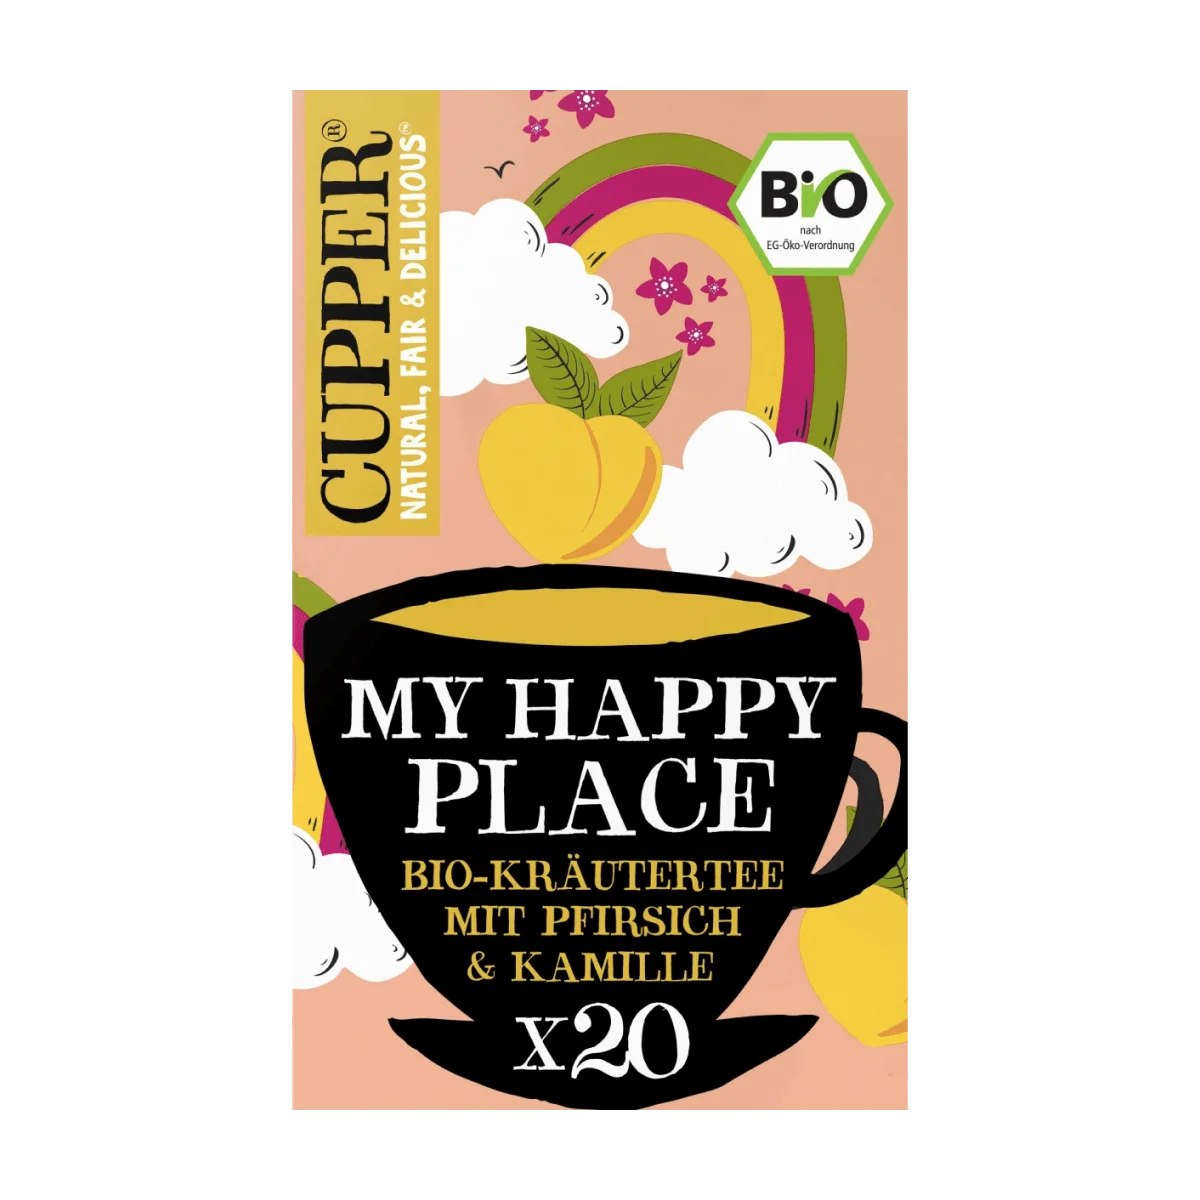 Cupper Kräutertee "My Happy Place" mit Pfirsich, Kamille (20 Beutel), 30 g